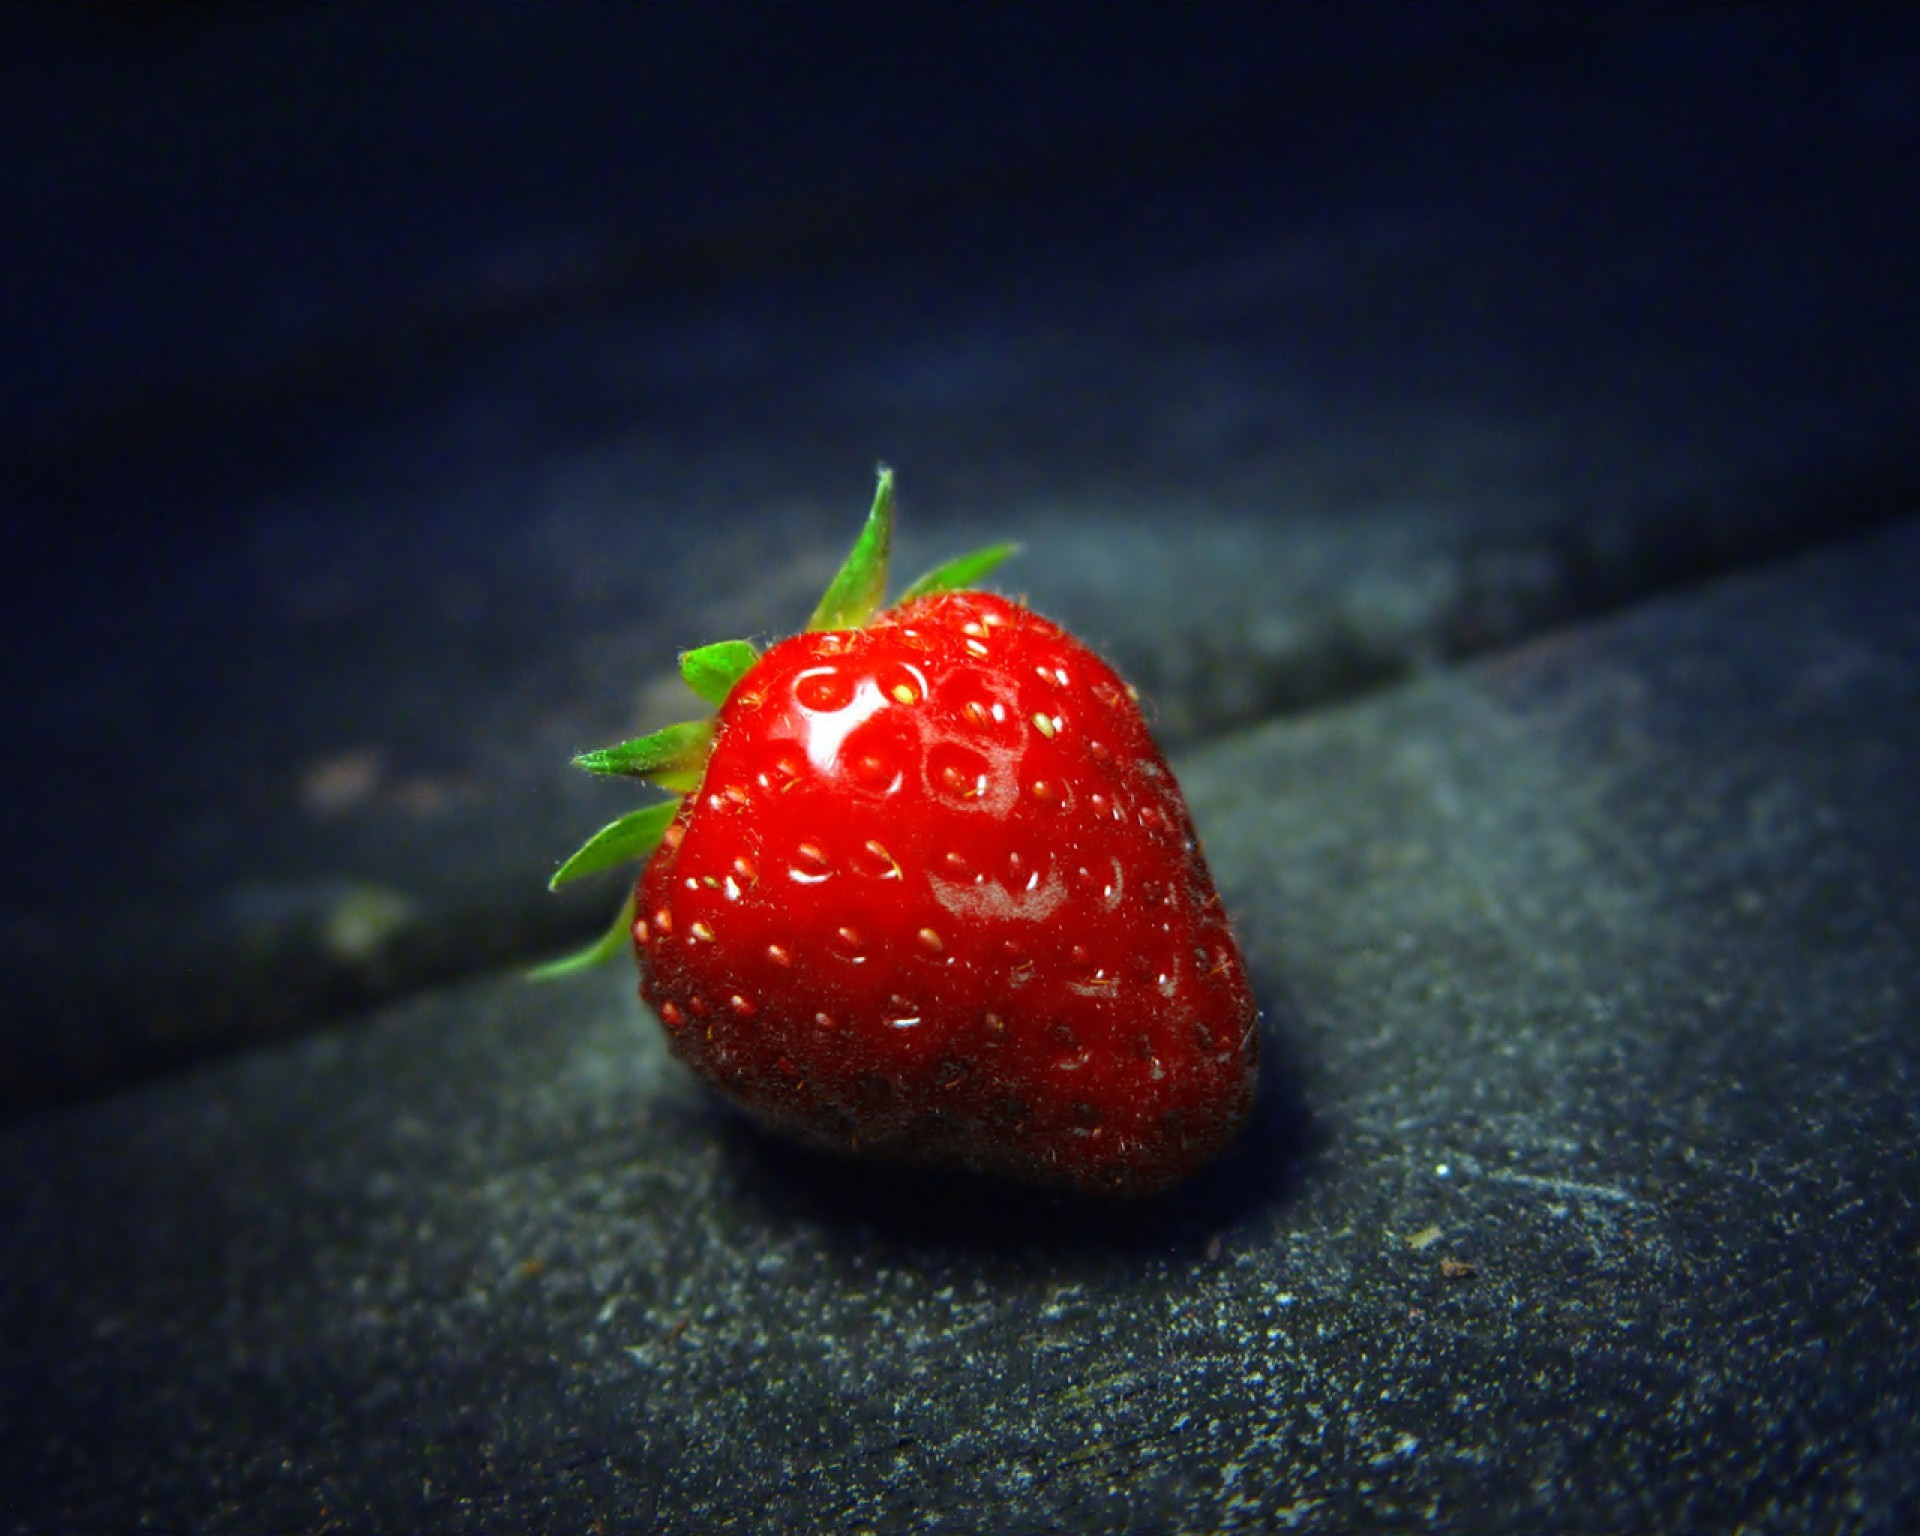 десерты фрукты ягодка клубничный сочные вкусные еда природа сладкий здоровья лето питание кондитерское изделие натюрморт лист